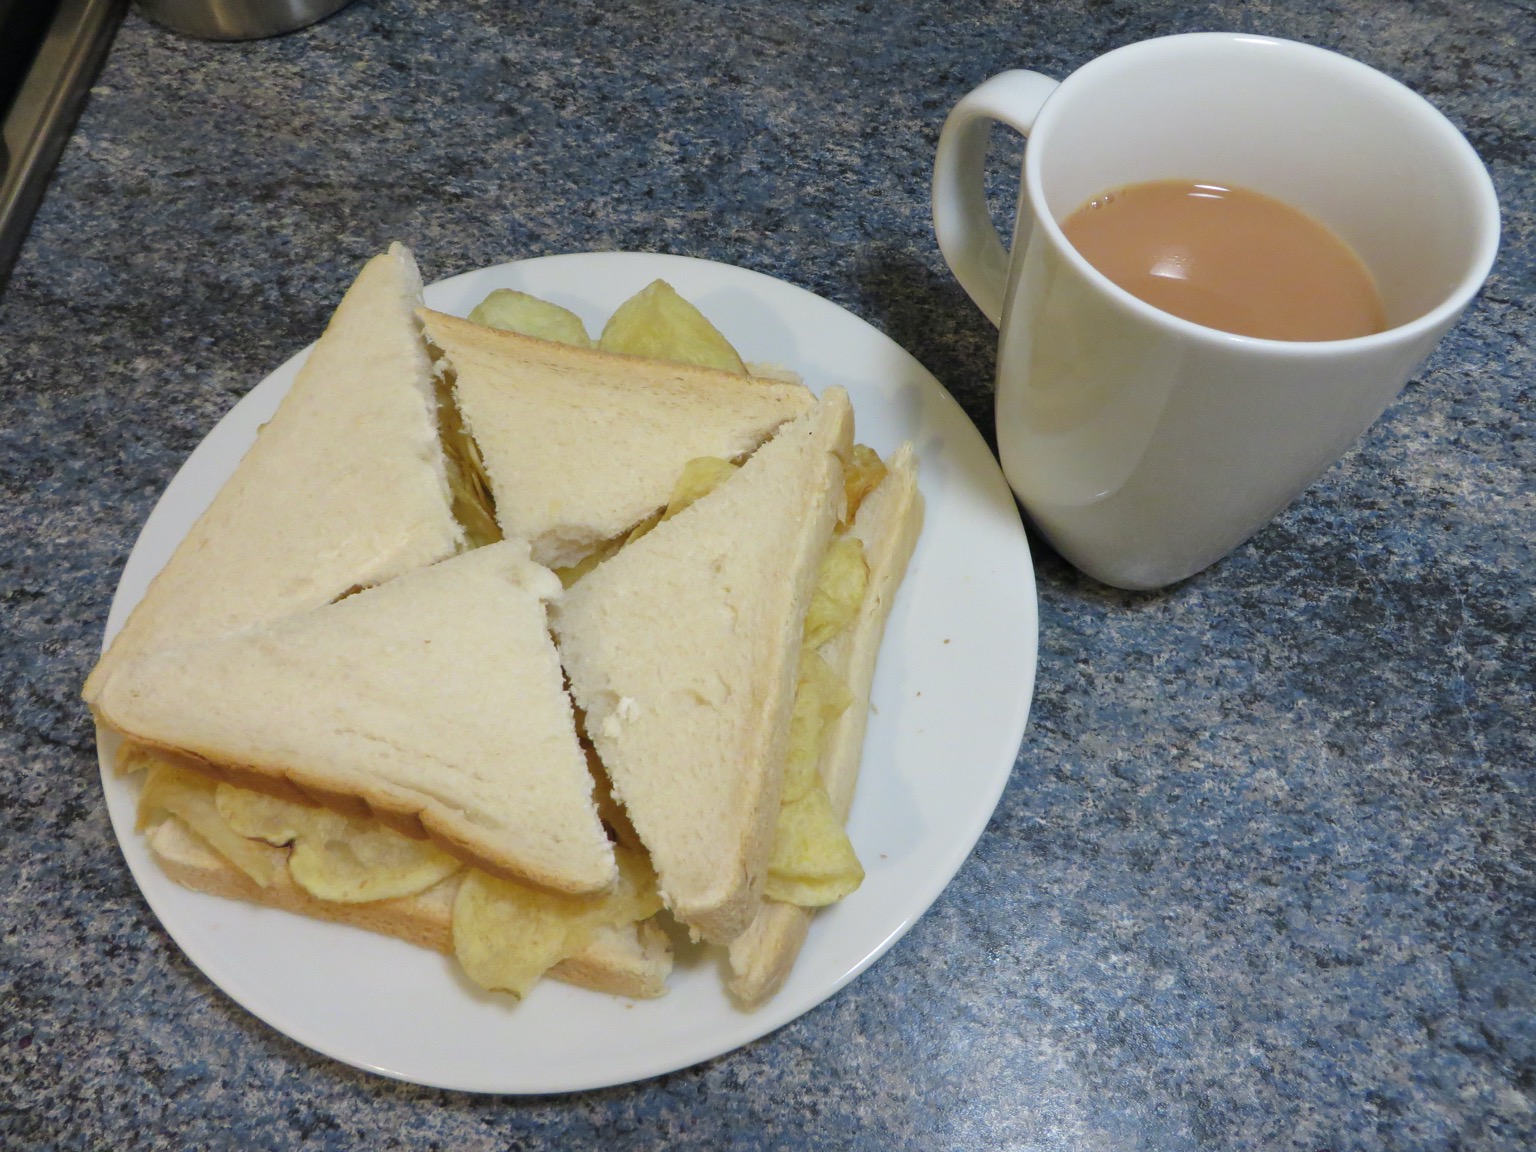 White crisp sandwich alongside a mug of tea